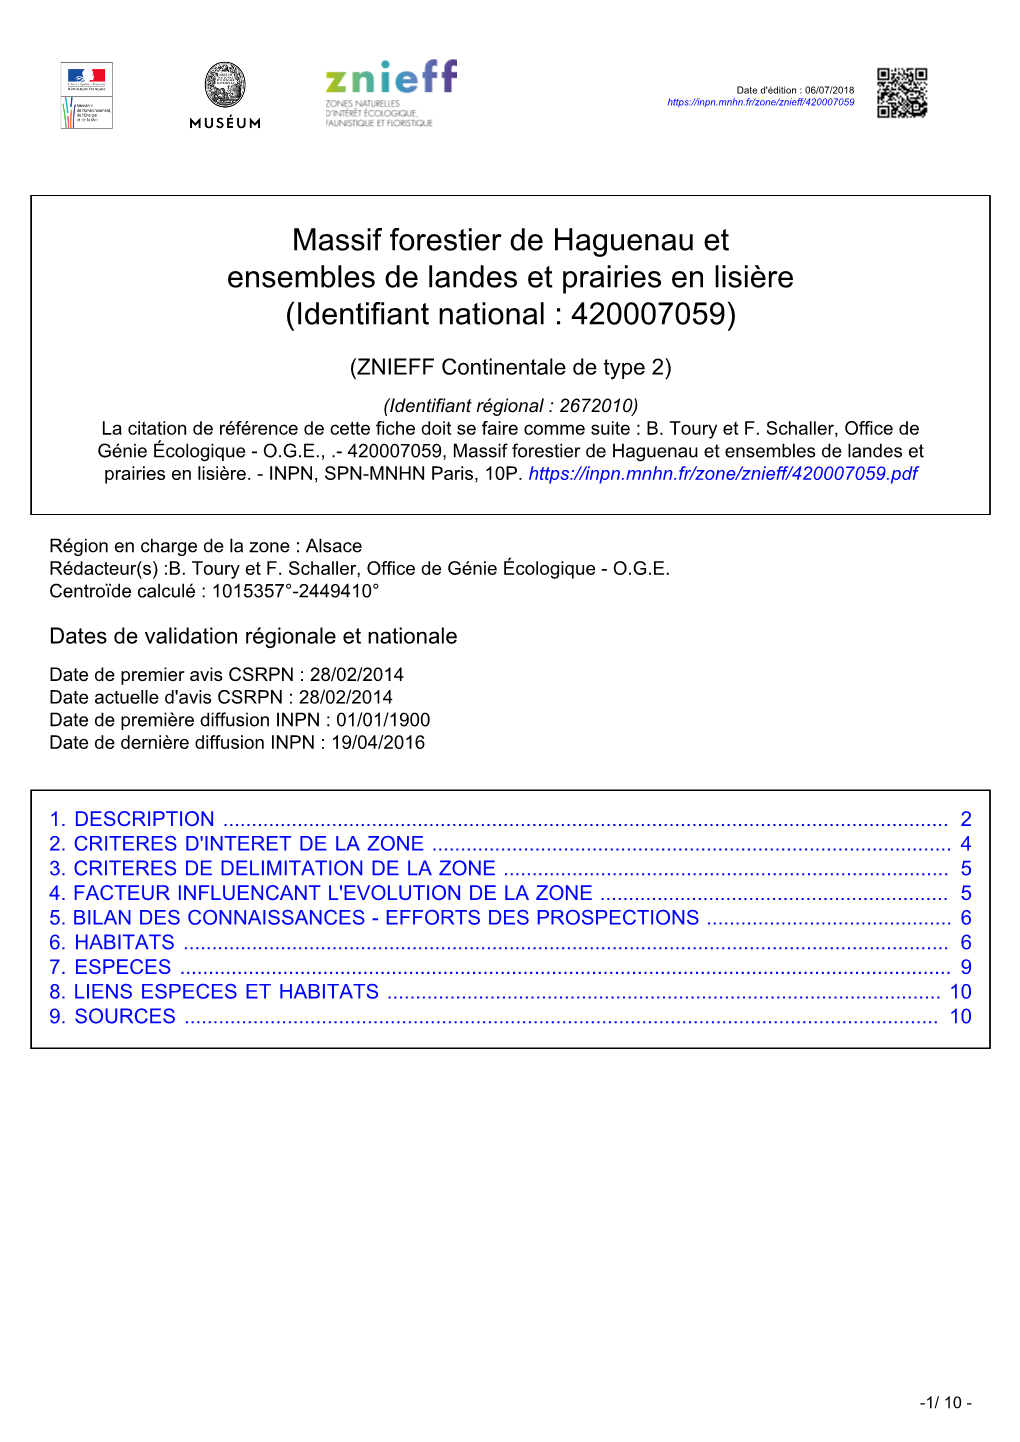 Massif Forestier De Haguenau Et Ensembles De Landes Et Prairies En Lisière (Identifiant National : 420007059)